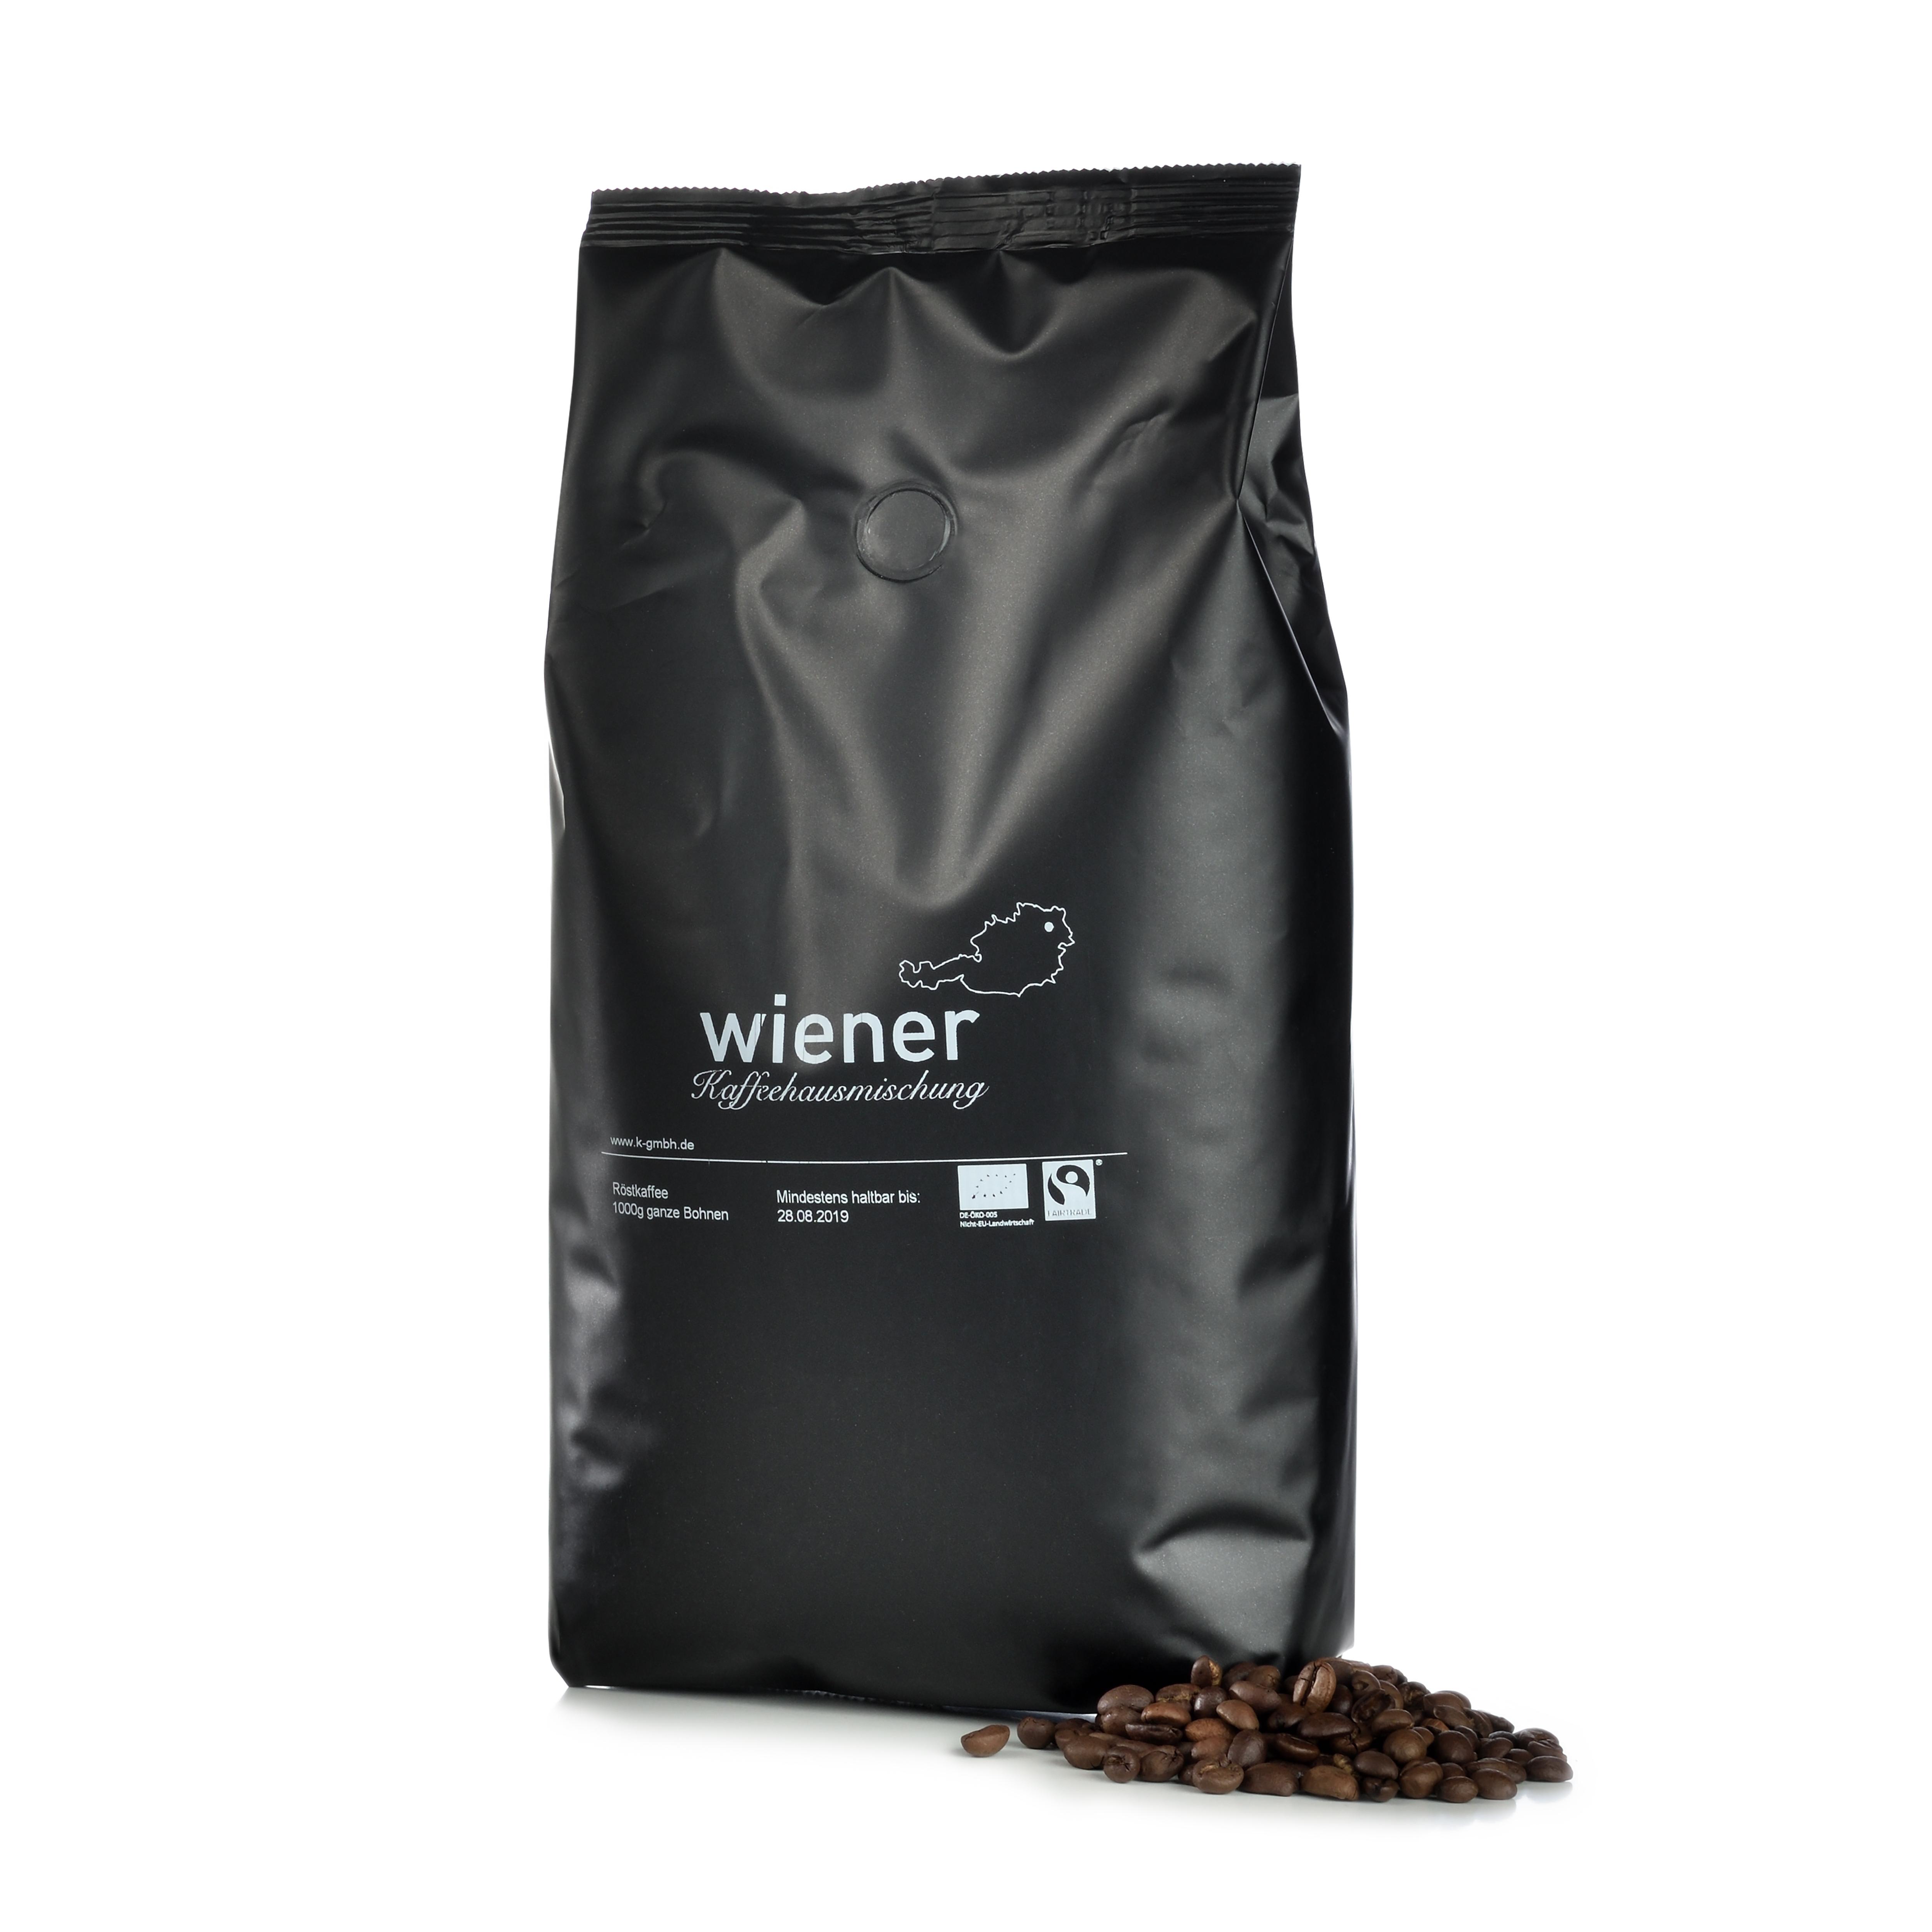 Wiener Kaffeehausmischung Bio/Fairtrade 1kg - Ganze Bohne